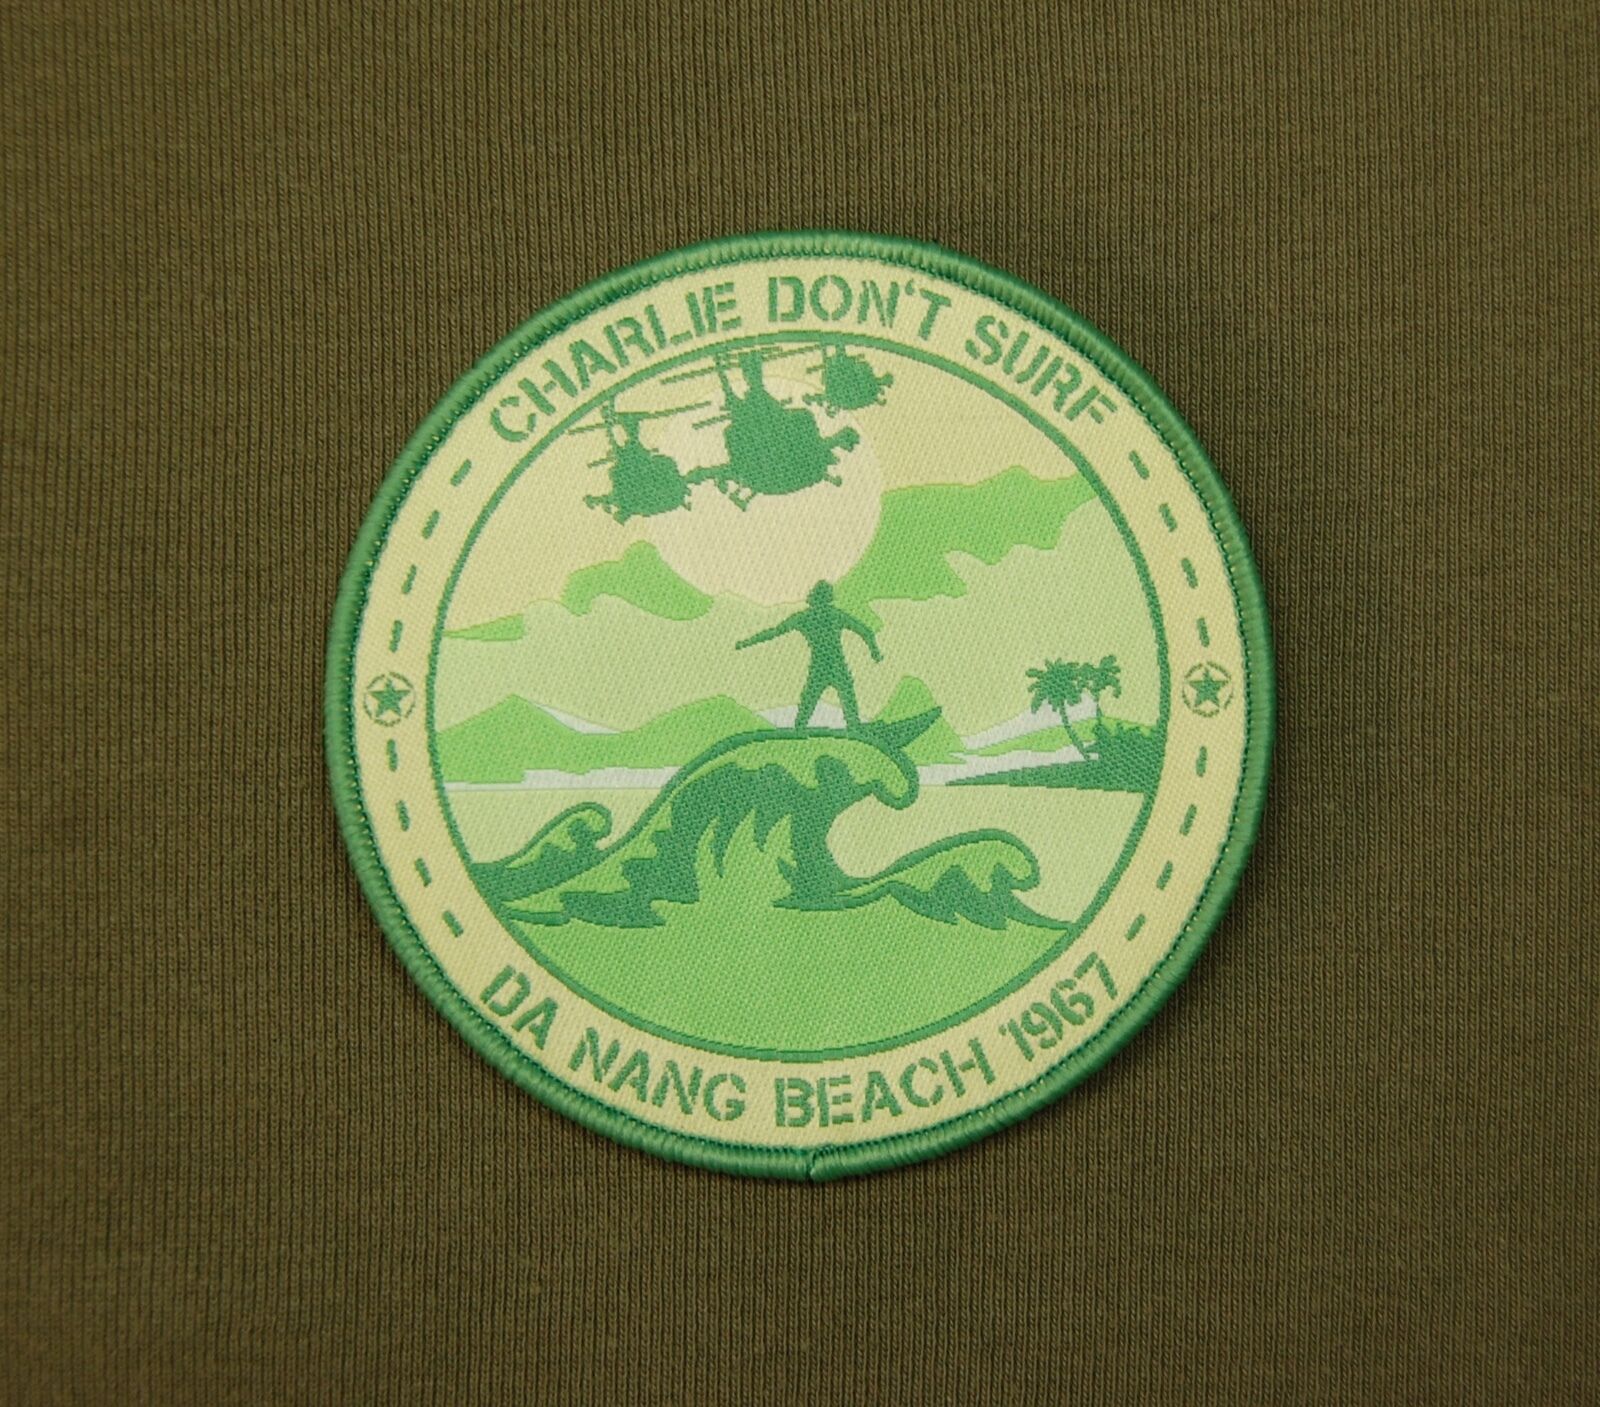 Charlie Don't Surf Da Nang Beach 1967 Woven Patch Apocalypse Now Vietnam War